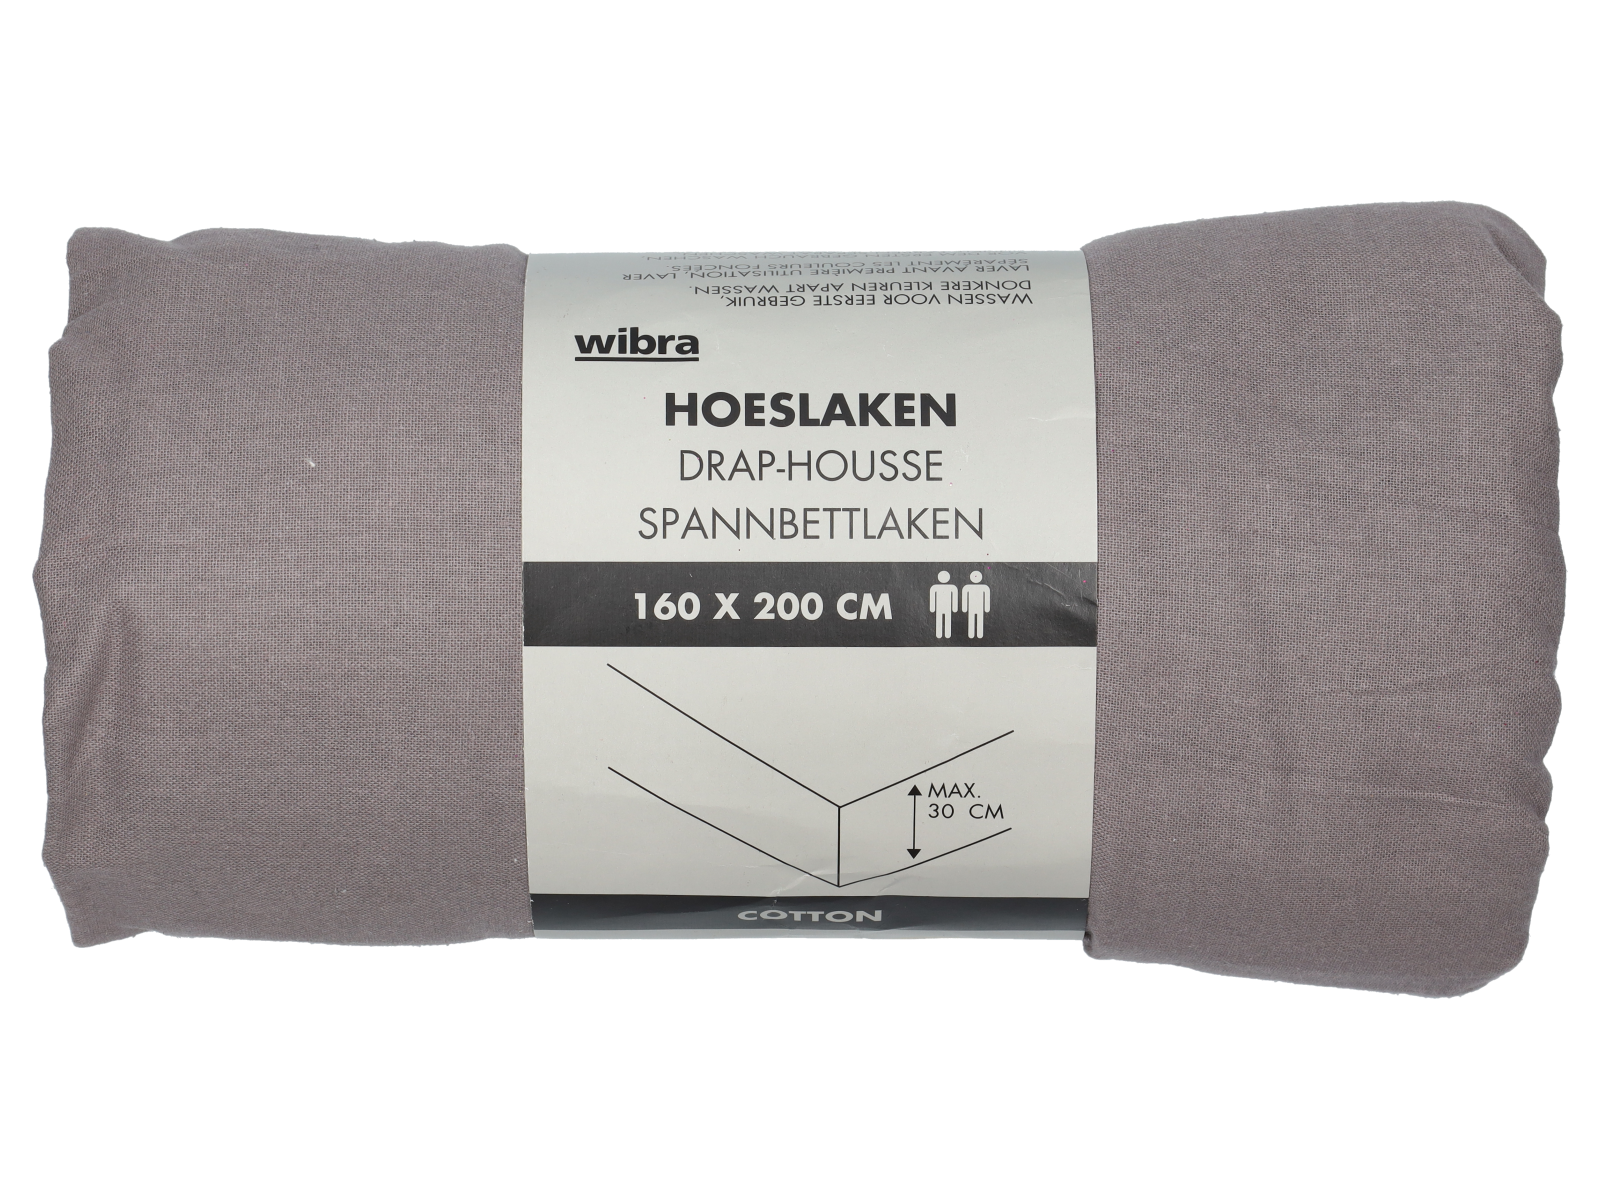 Hoeslaken - 160 x 200 cm - antraciet - Wibra